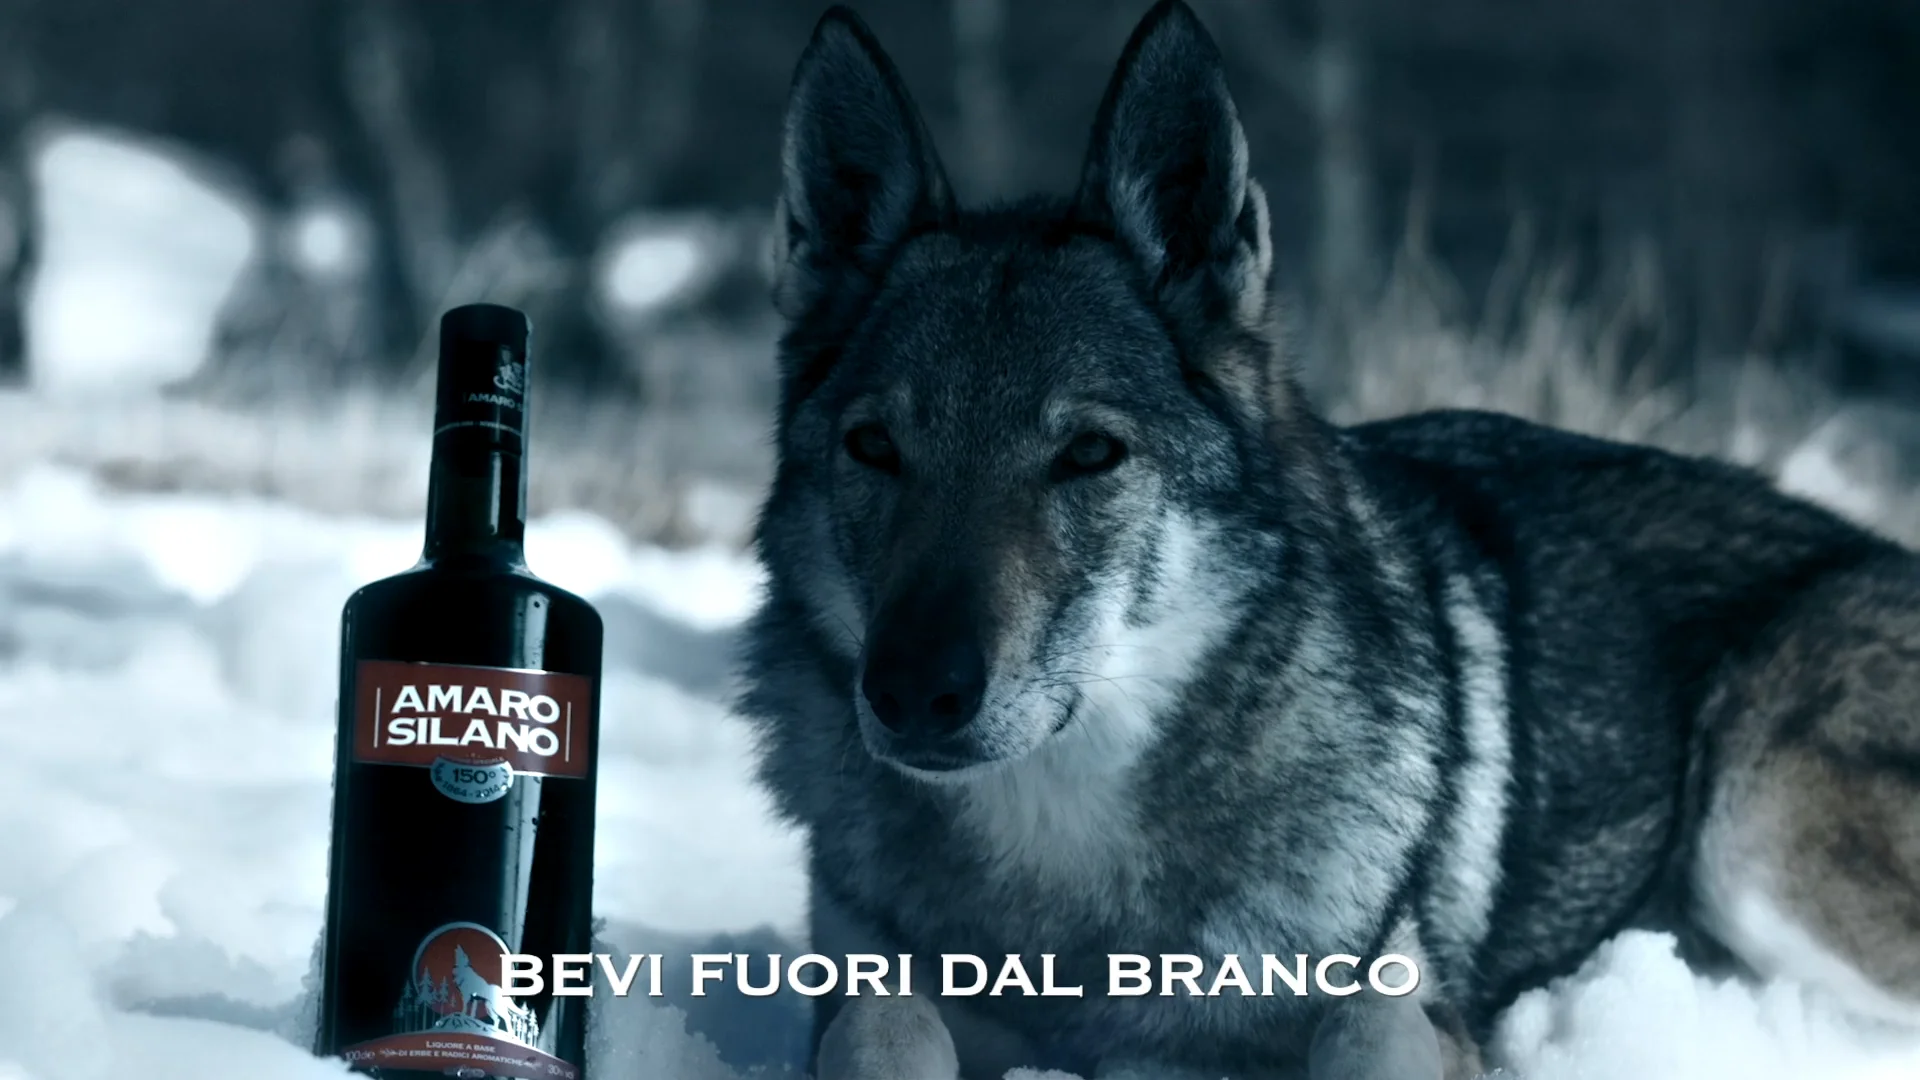 Amaro Silano - Bevi Fuori dal Branco on Vimeo